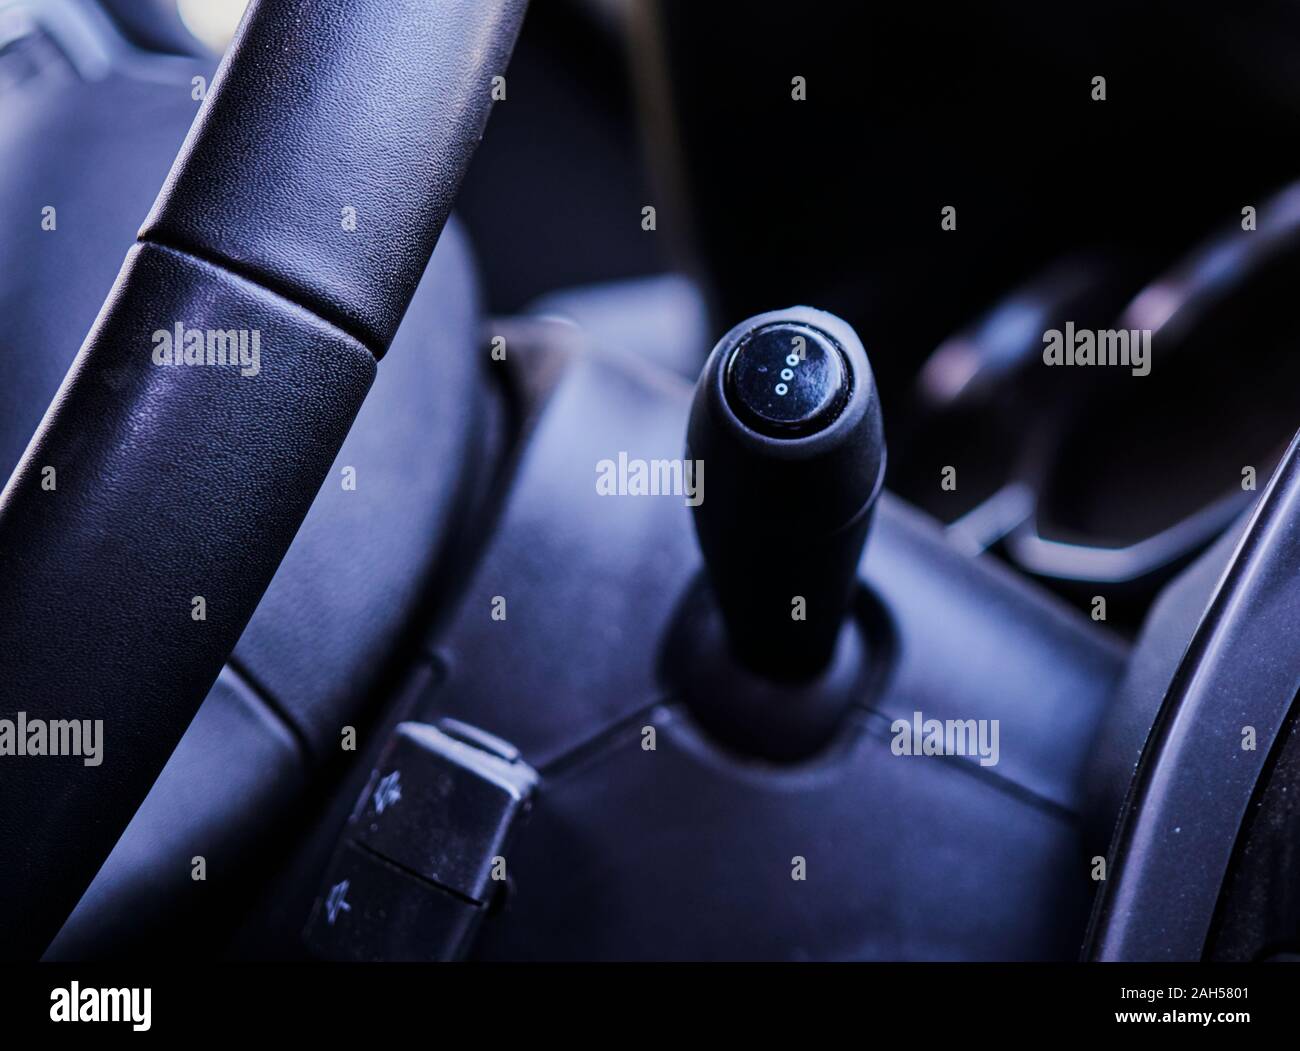 Vista la leva degli indicatori di direzione e una parte del volante nella parte anteriore interna di una automobile Foto Stock